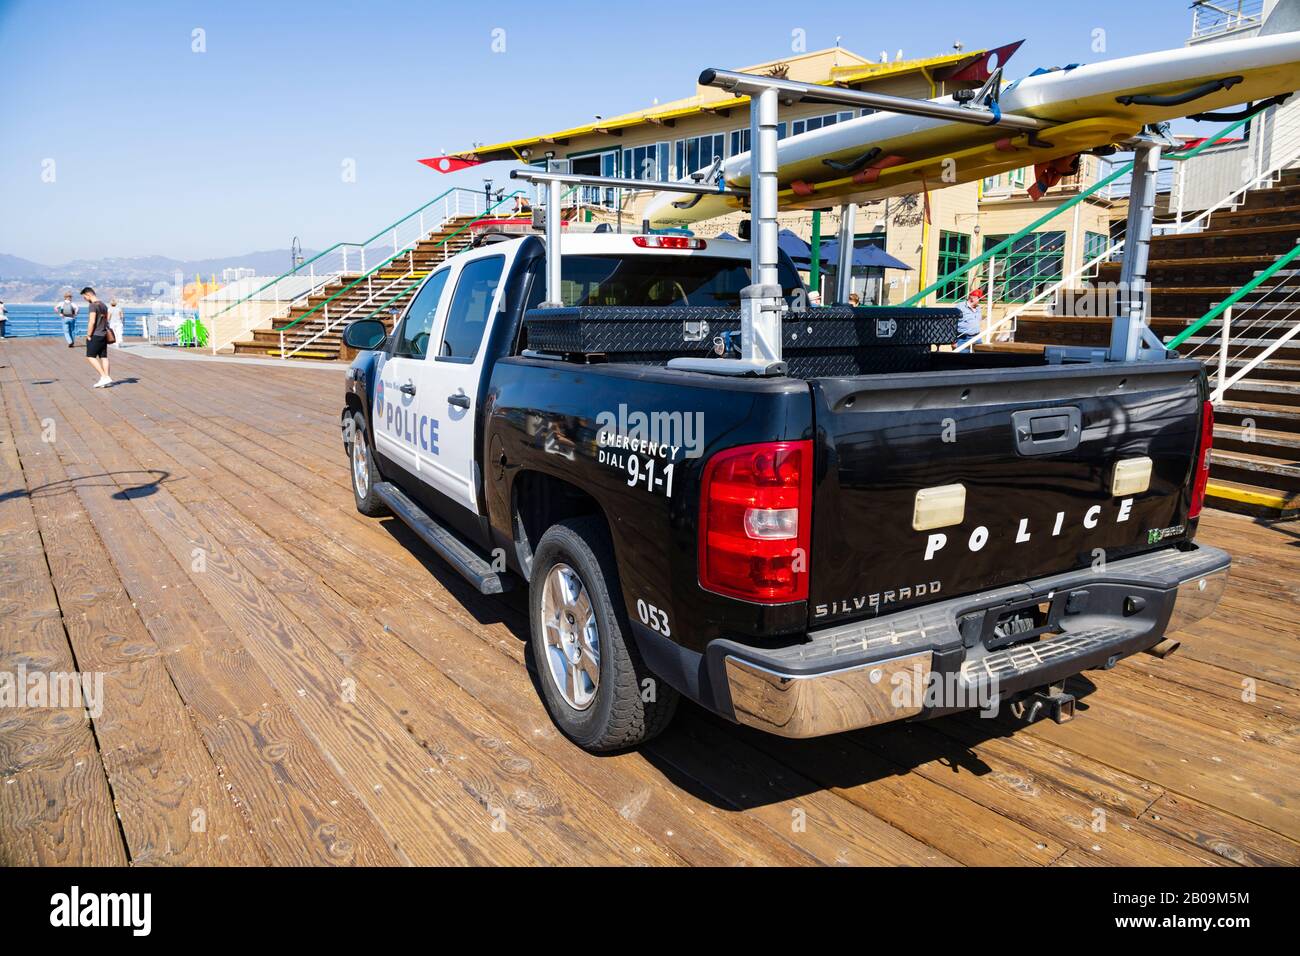 Chevrolet Silverado patrouille de police hybride ramassage avec planche de surf, au bout de la jetée de Santa Monica. Californie, États-Unis D'Amérique Banque D'Images